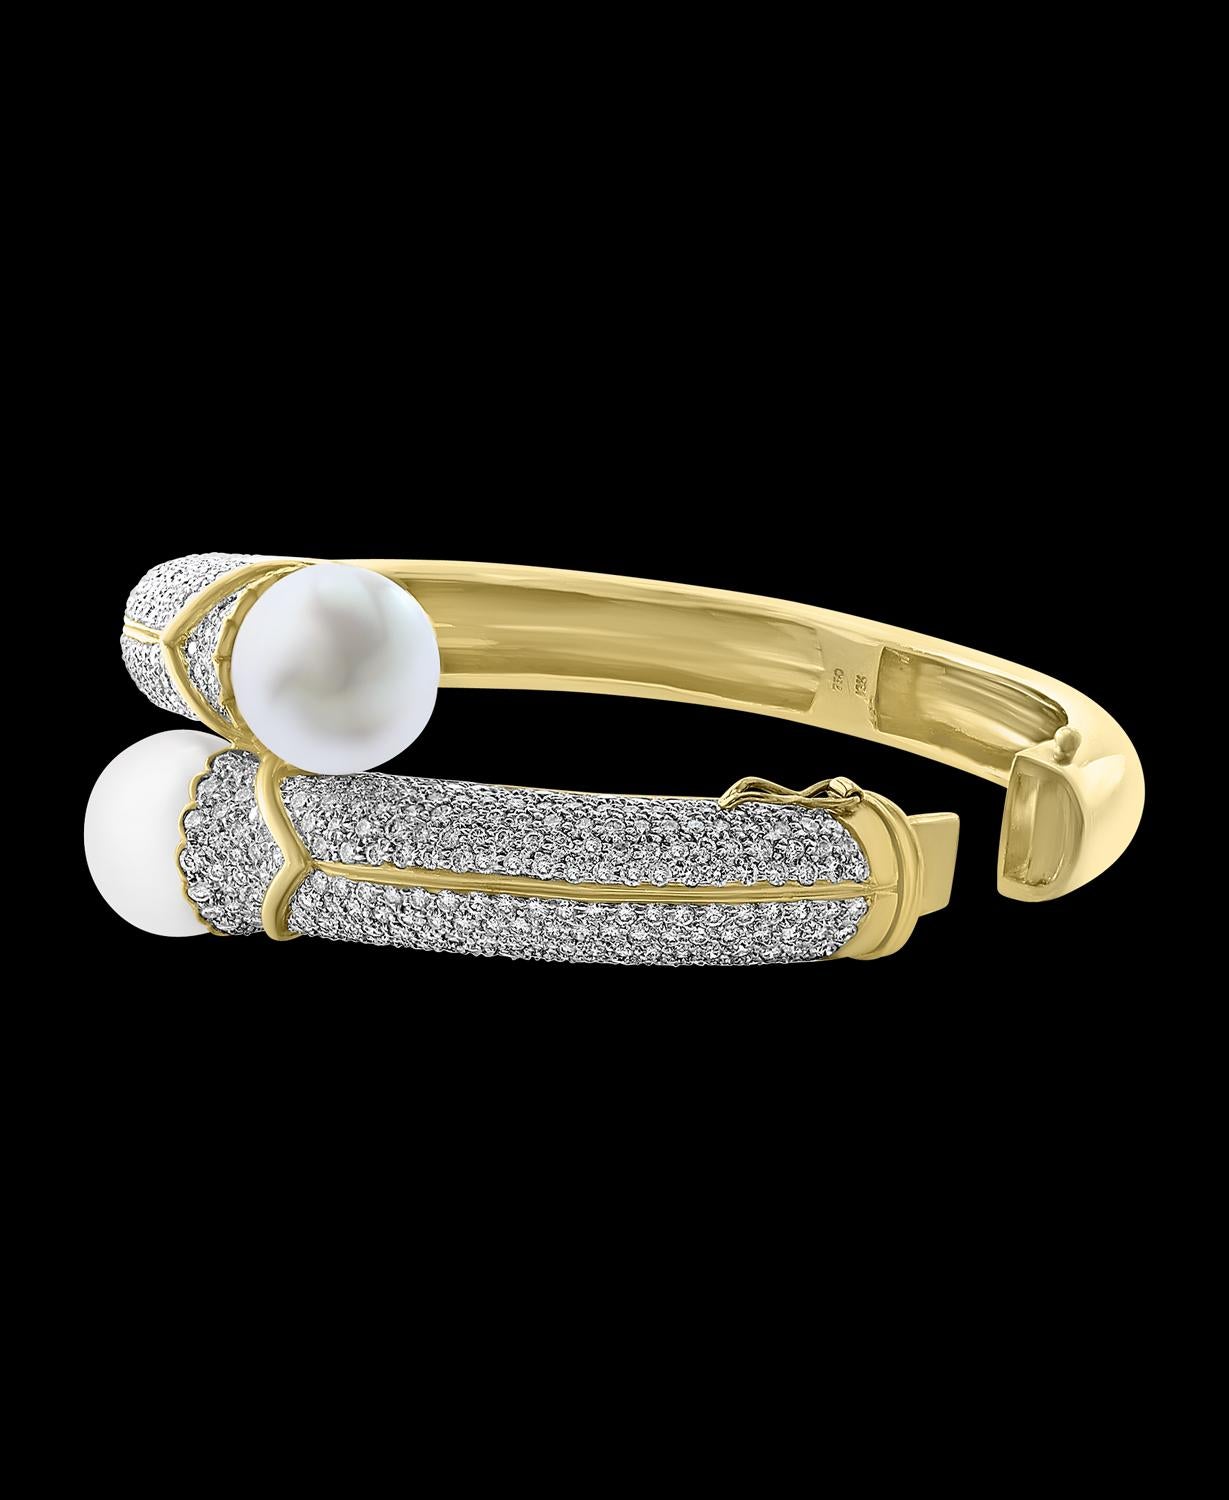 Deux perles des mers du Sud  Chaque 13,5 mm et  diamant de 8 Ct  Bracelet en or jaune 18 carats
Diamants : environ 8 carats
Perles des mers du Sud : Chaque perle est très brillante, blanche, sans défaut, et mesure 13,5 mm 
jaune 18k  or  : 66